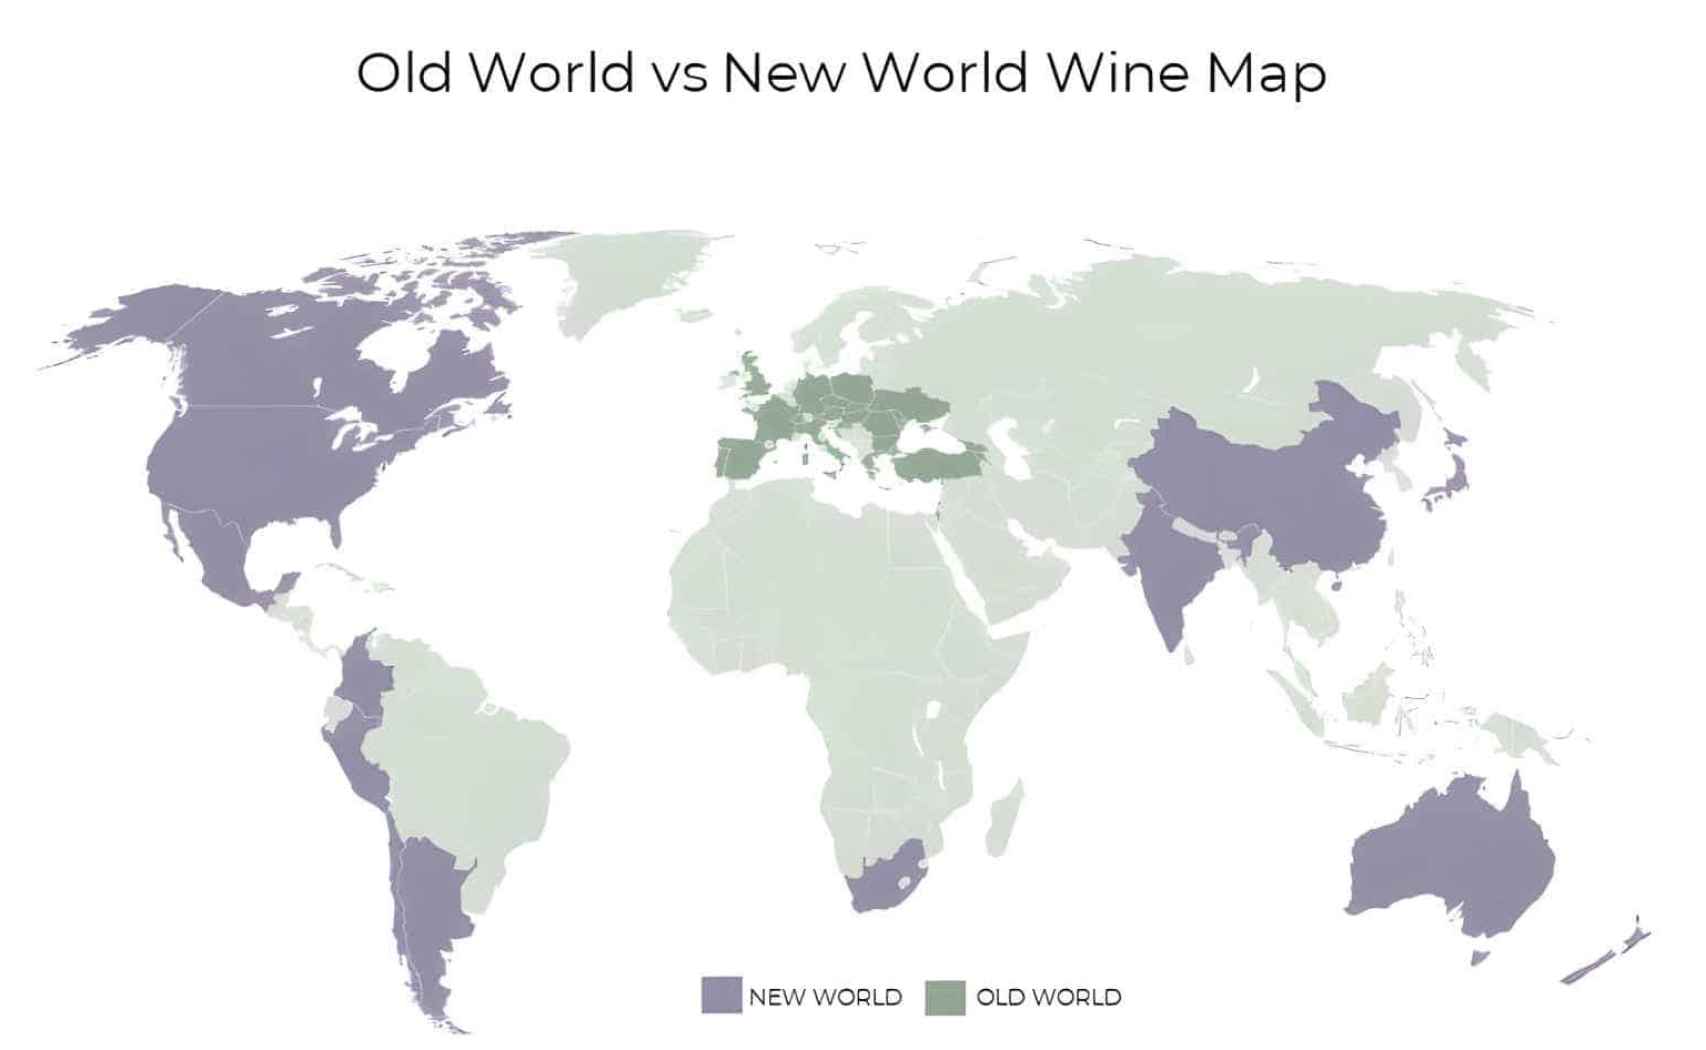 Mapa del Viejo y el Nuevo Mundo del vino